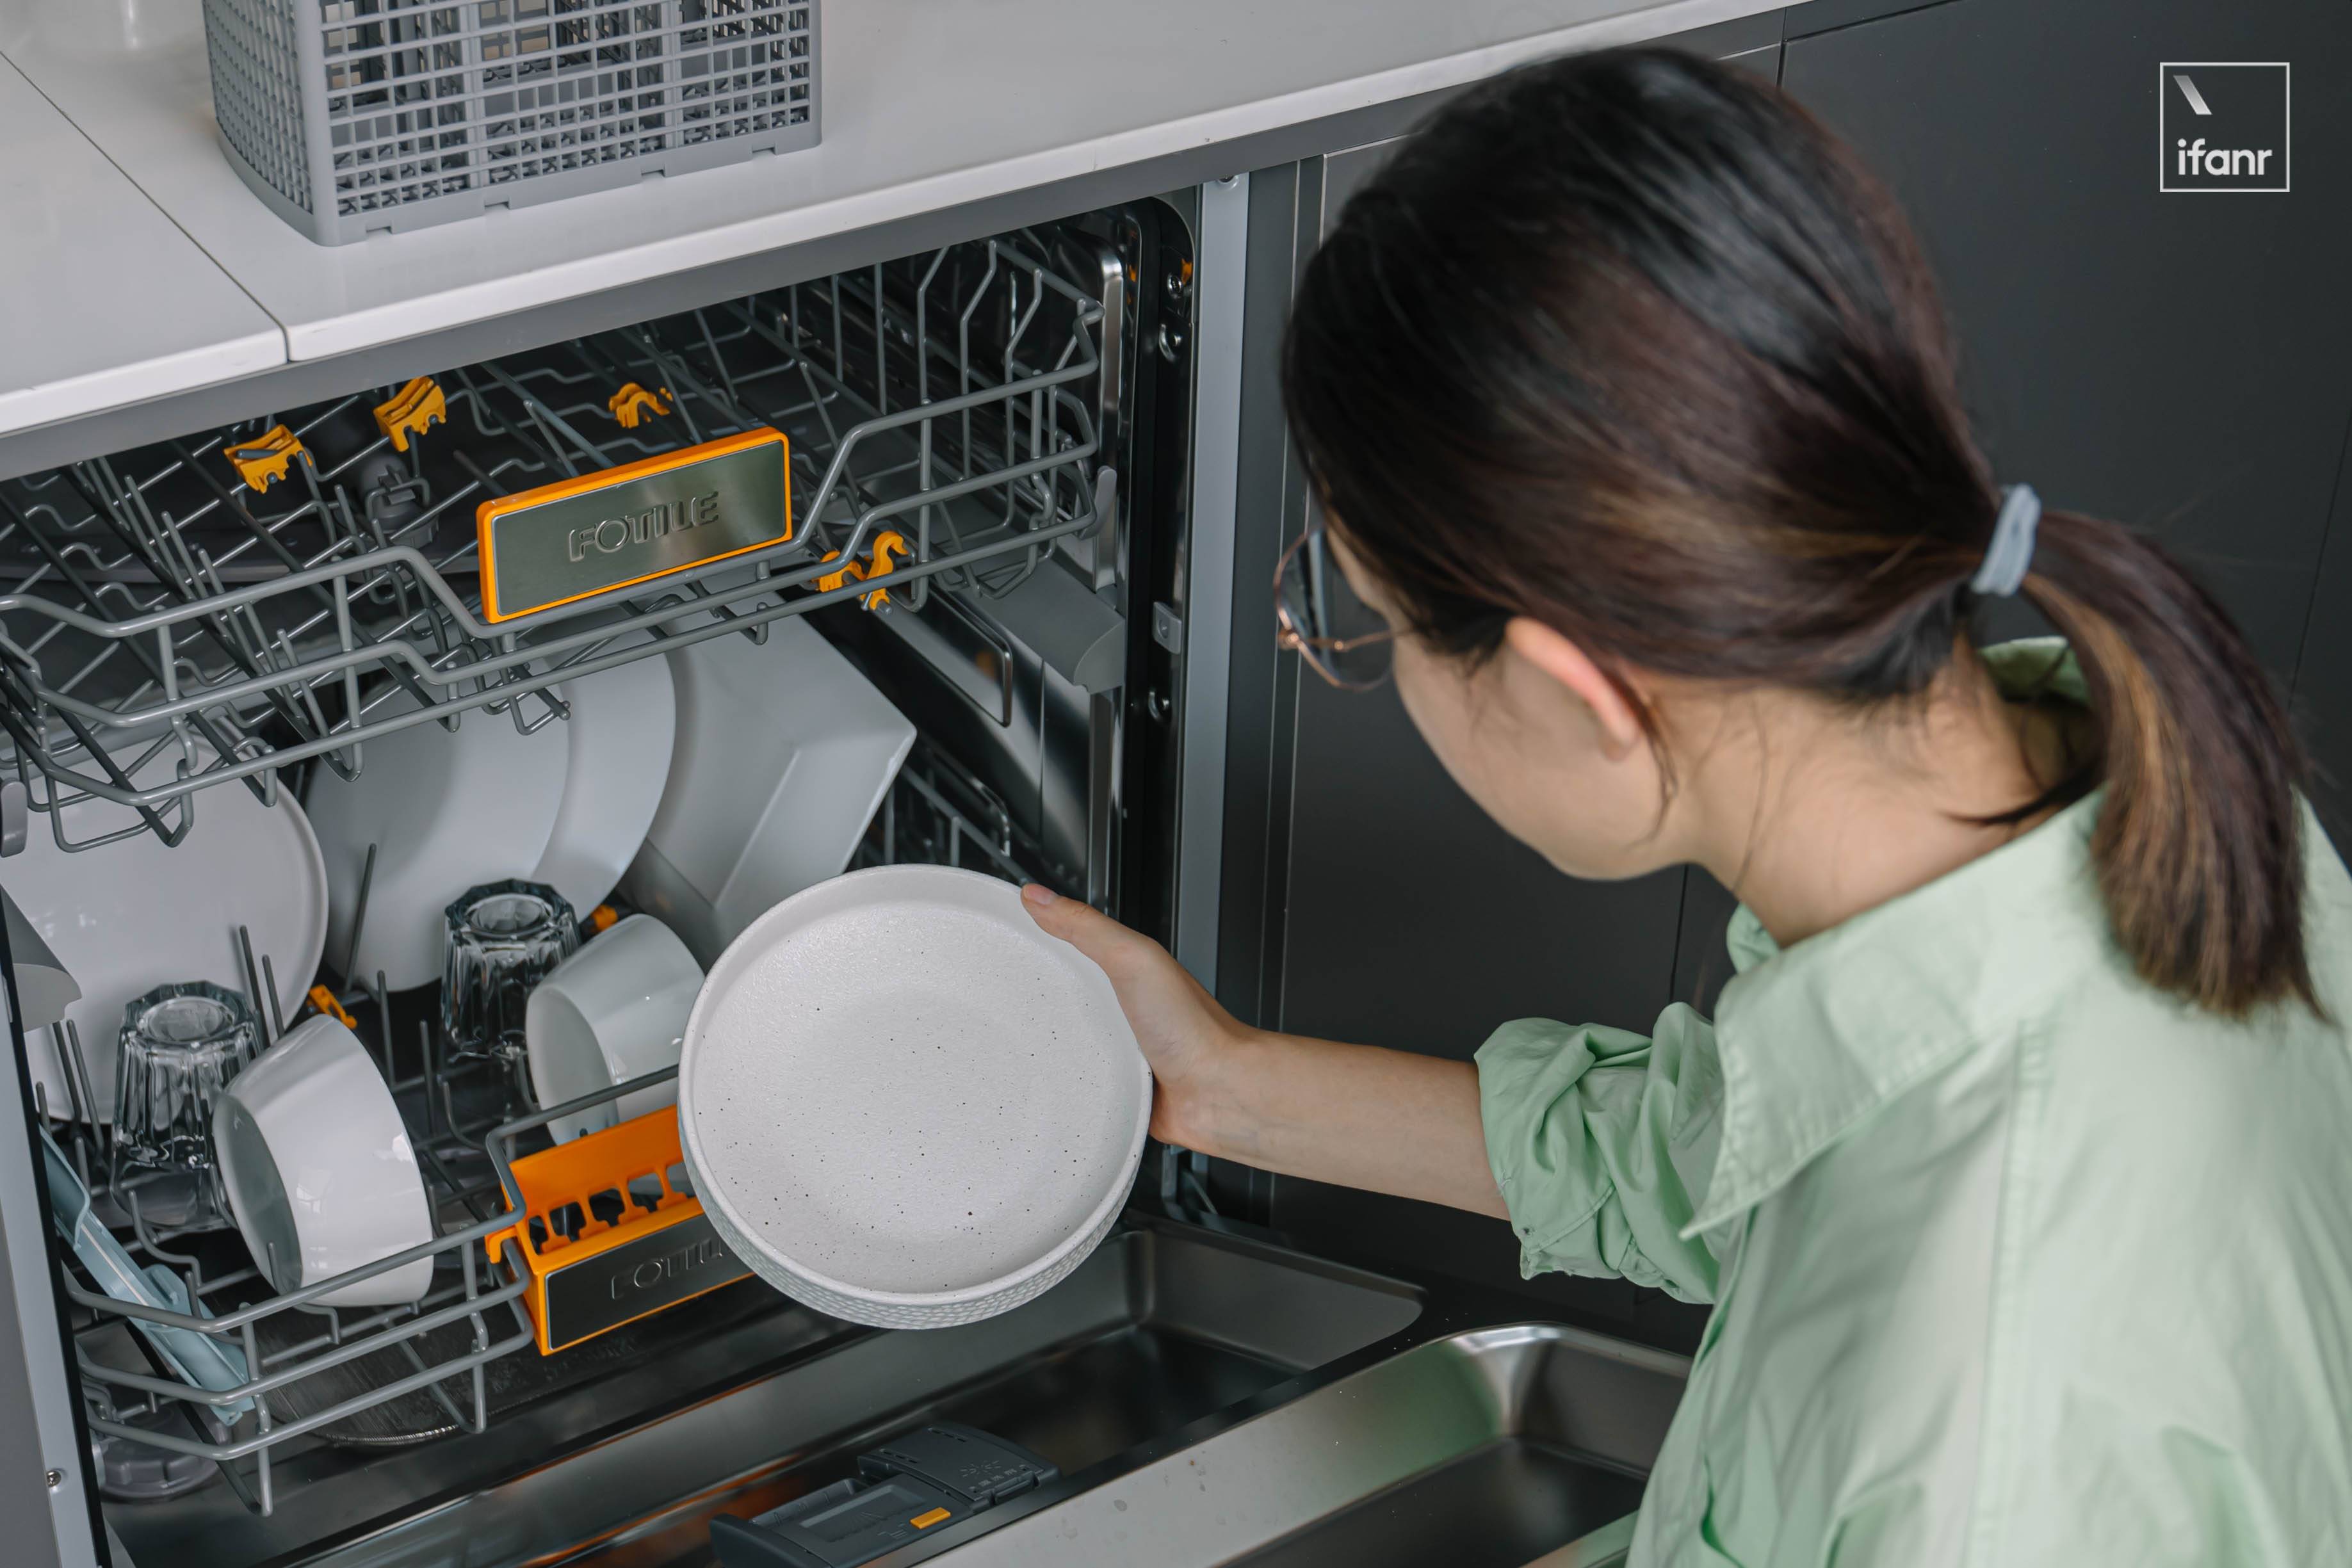 AAA06570 - Per svuotare questa lavastoviglie Fangtai W2, ho salvato i piatti più difficili per provarla